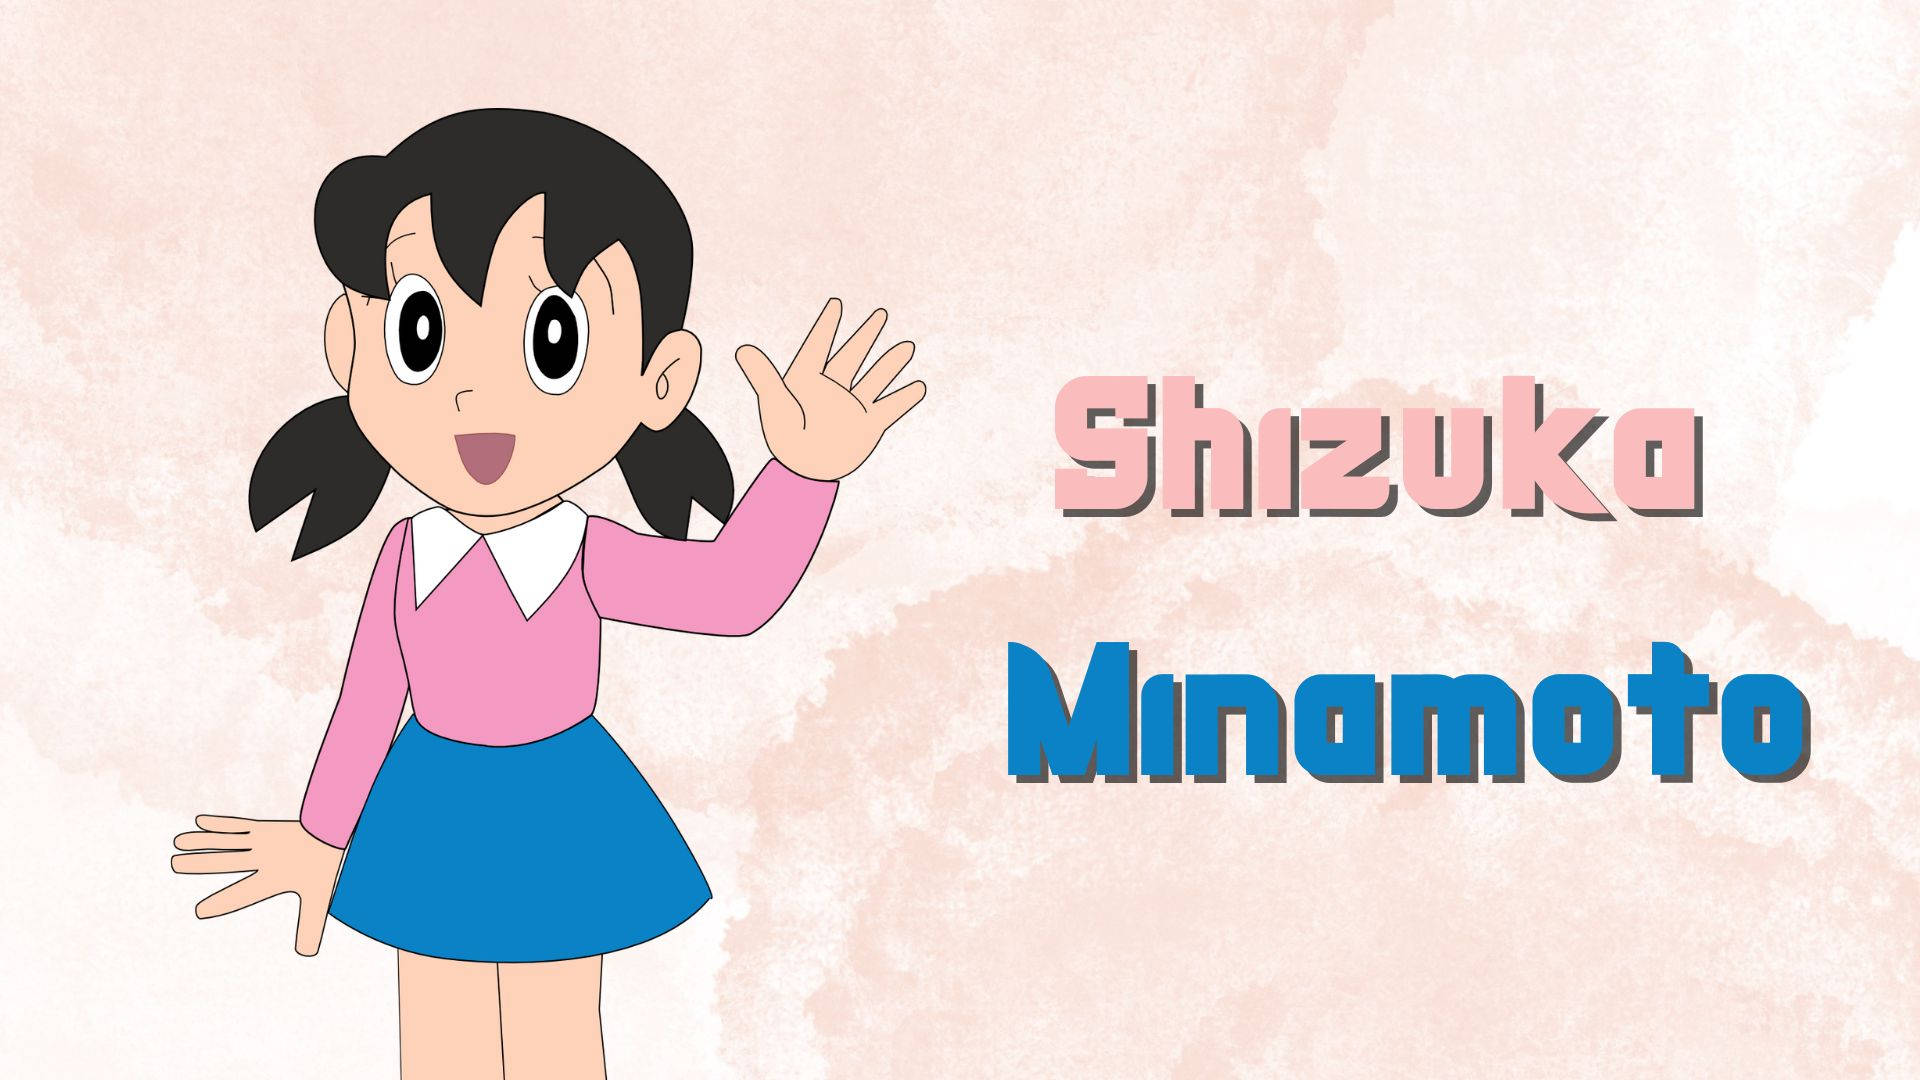 Top 19 Hình Nền Nobita Và Shizuka Đẹp Nhất Ảnh Nobita Hình Nền Nobita Đẹp  Nhất